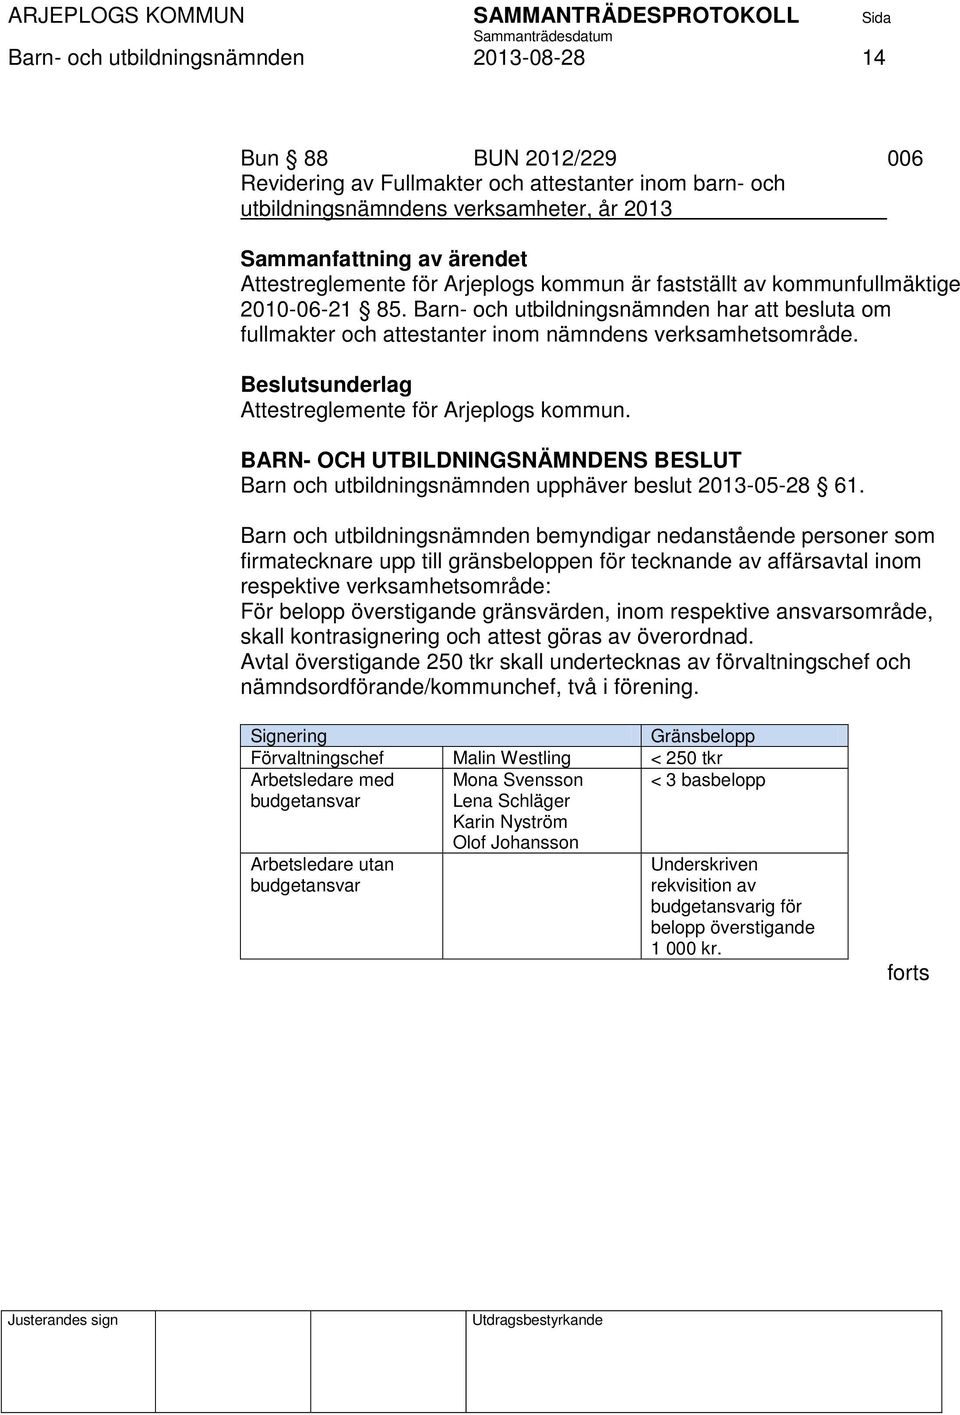 Attestreglemente för Arjeplogs kommun. Barn och utbildningsnämnden upphäver beslut 2013-05-28 61.